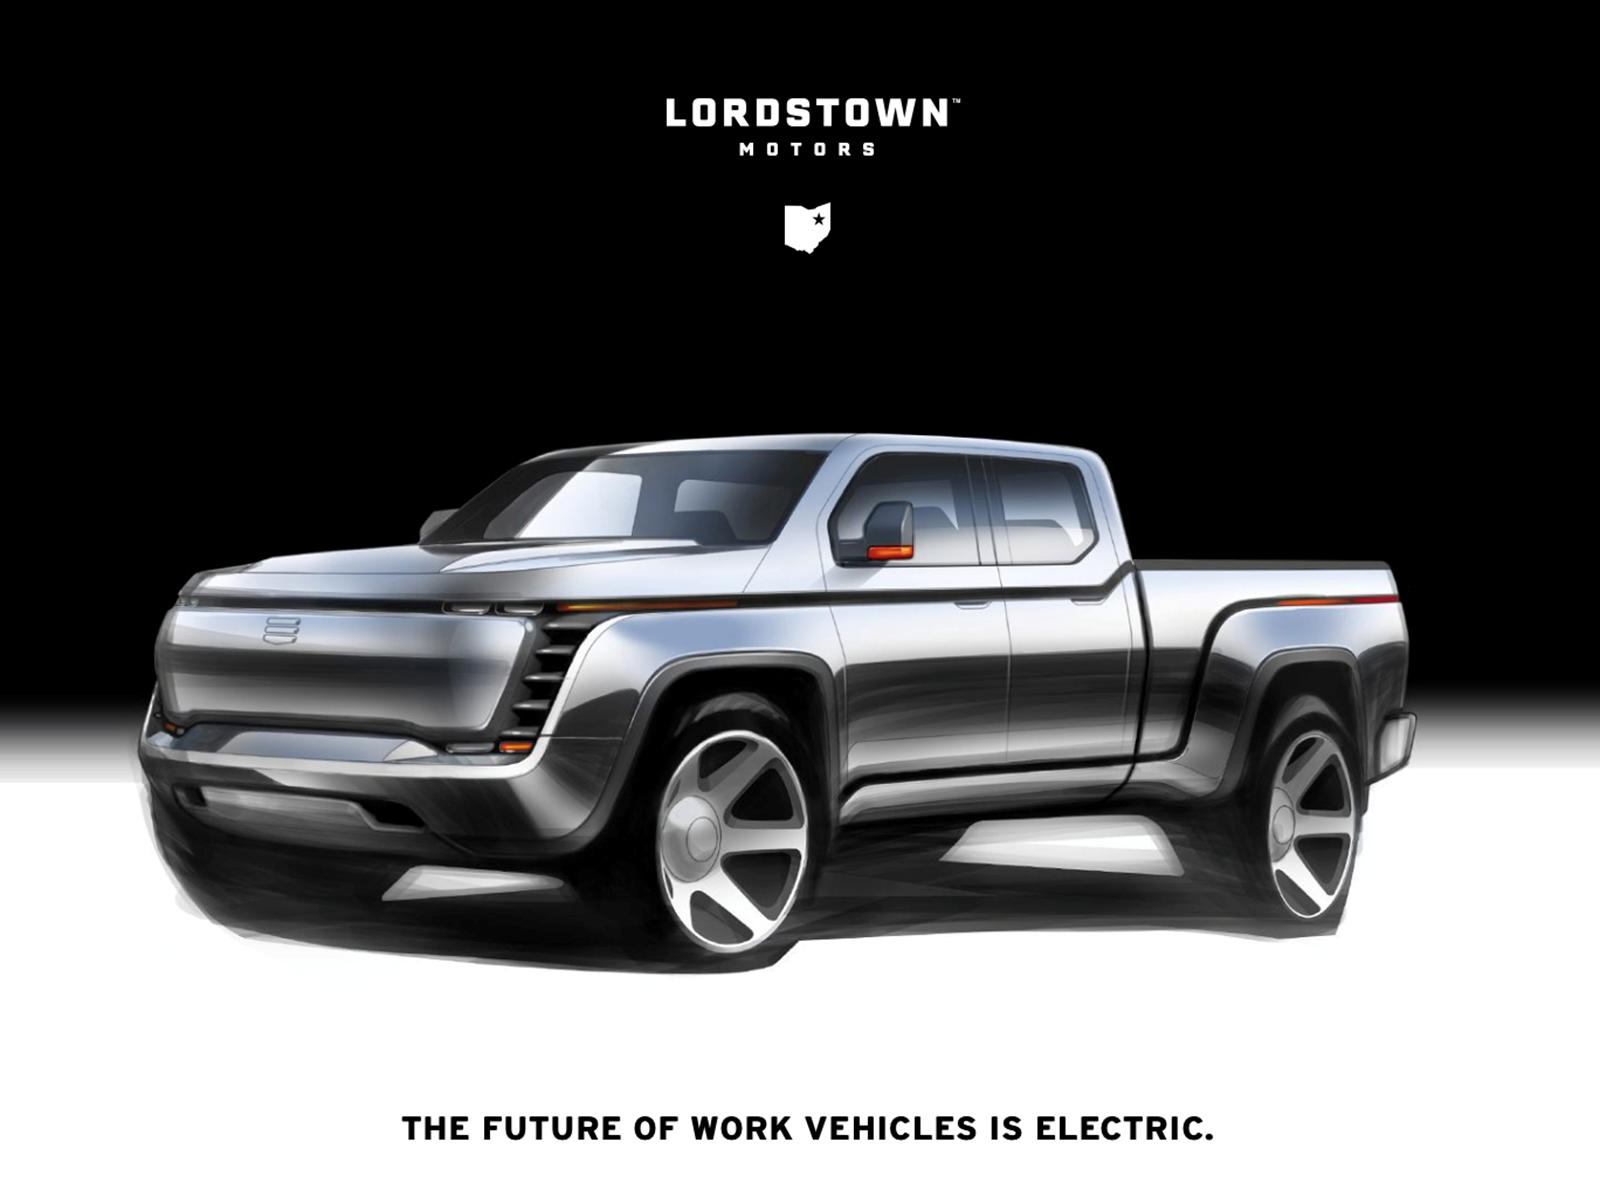 Одновременно с вышеупомянутыми были объявлены некоторые другие важные характеристики Lordstown, в том числе буксировочная способность в 2700 кг, максимальная скорость 130 км/ч и низкое время зарядки.